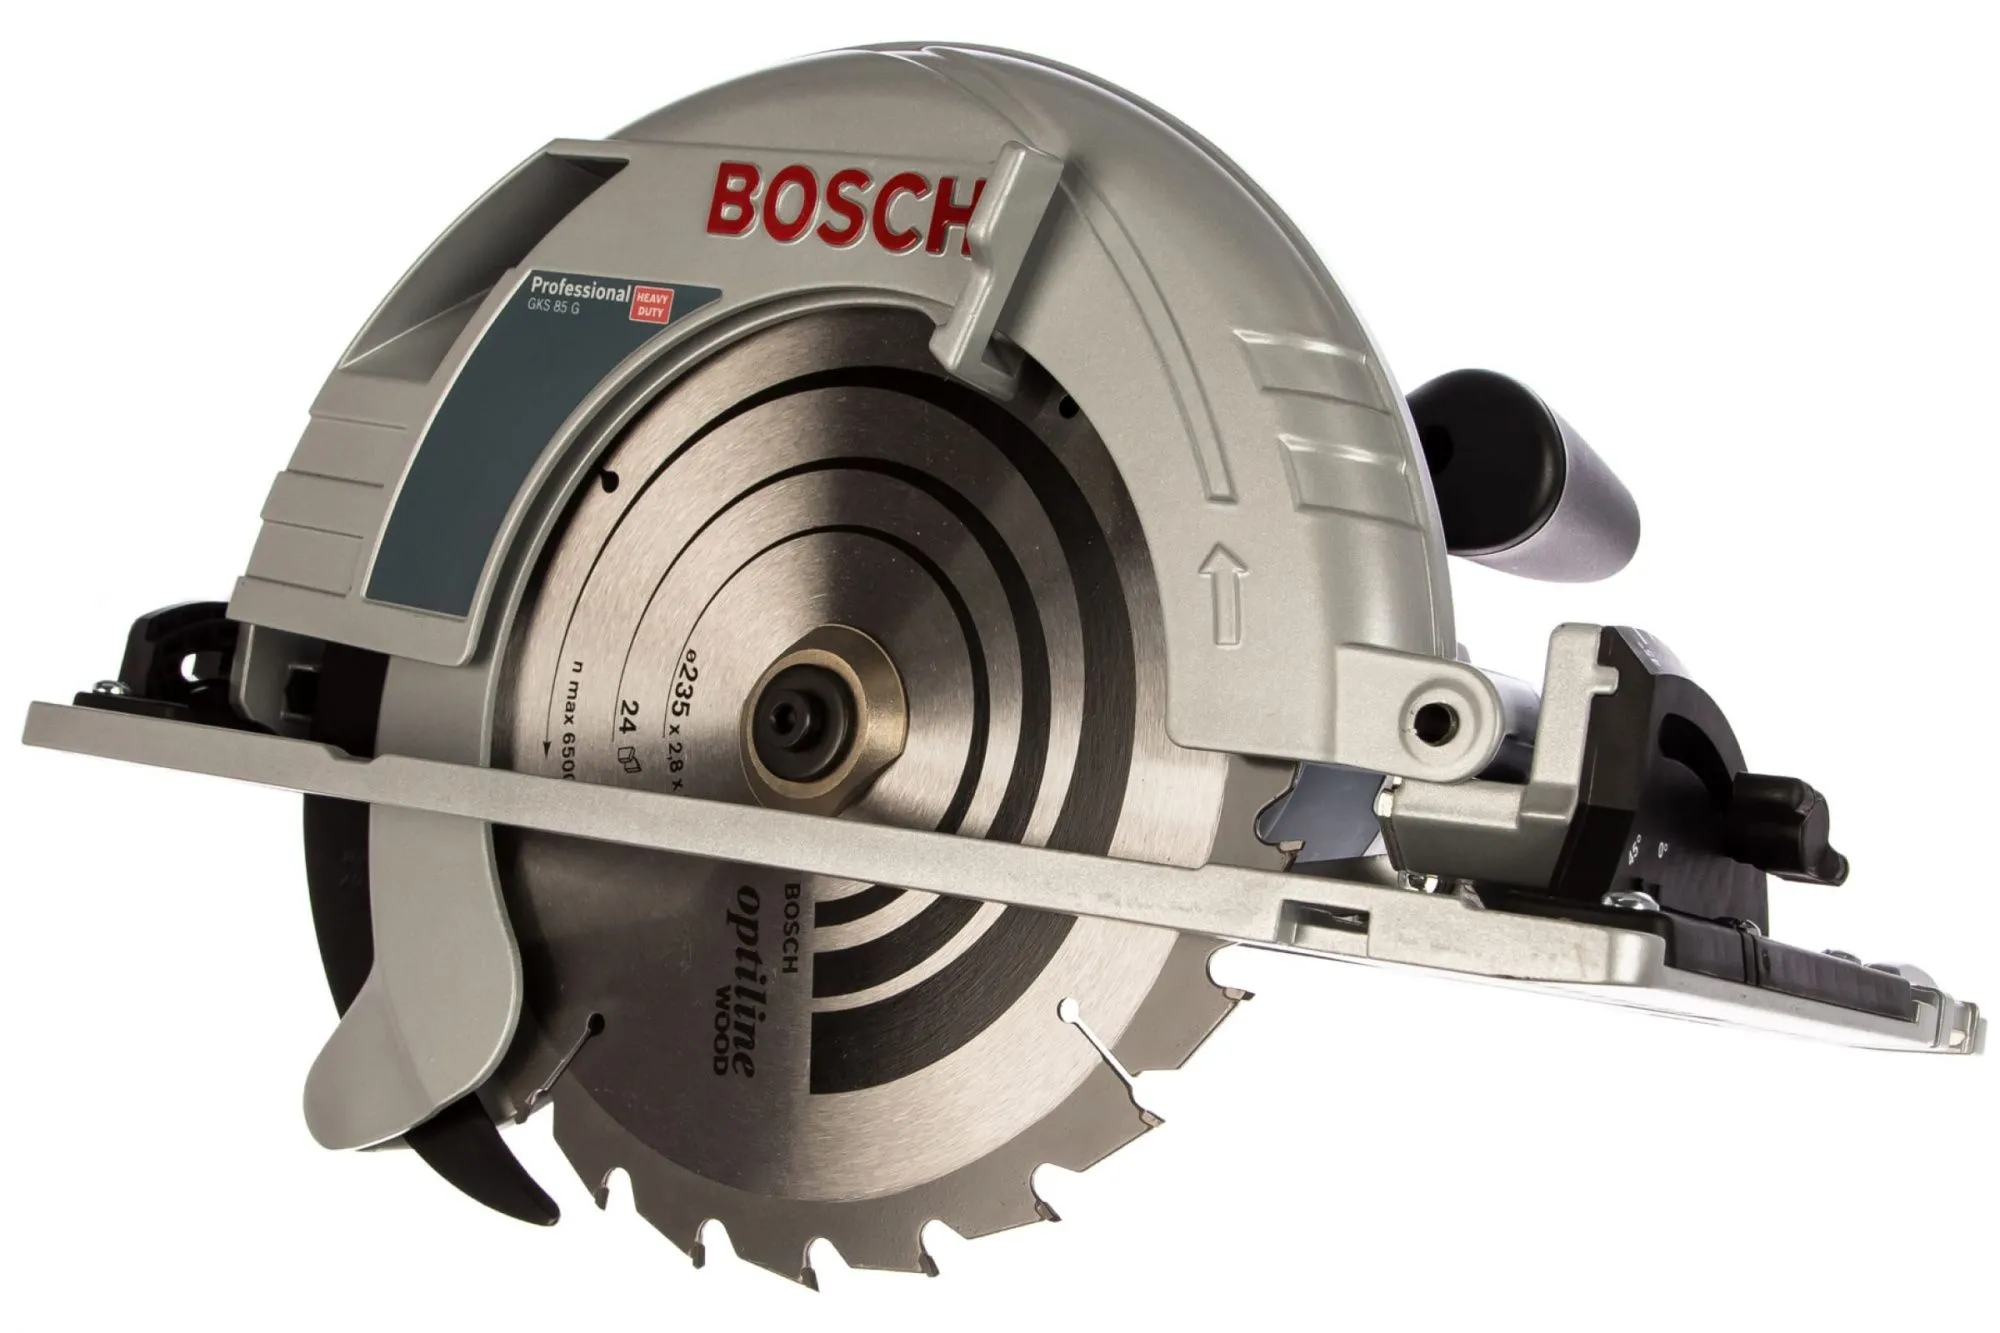 Bosch GKS 85 G Professional (060157A900)